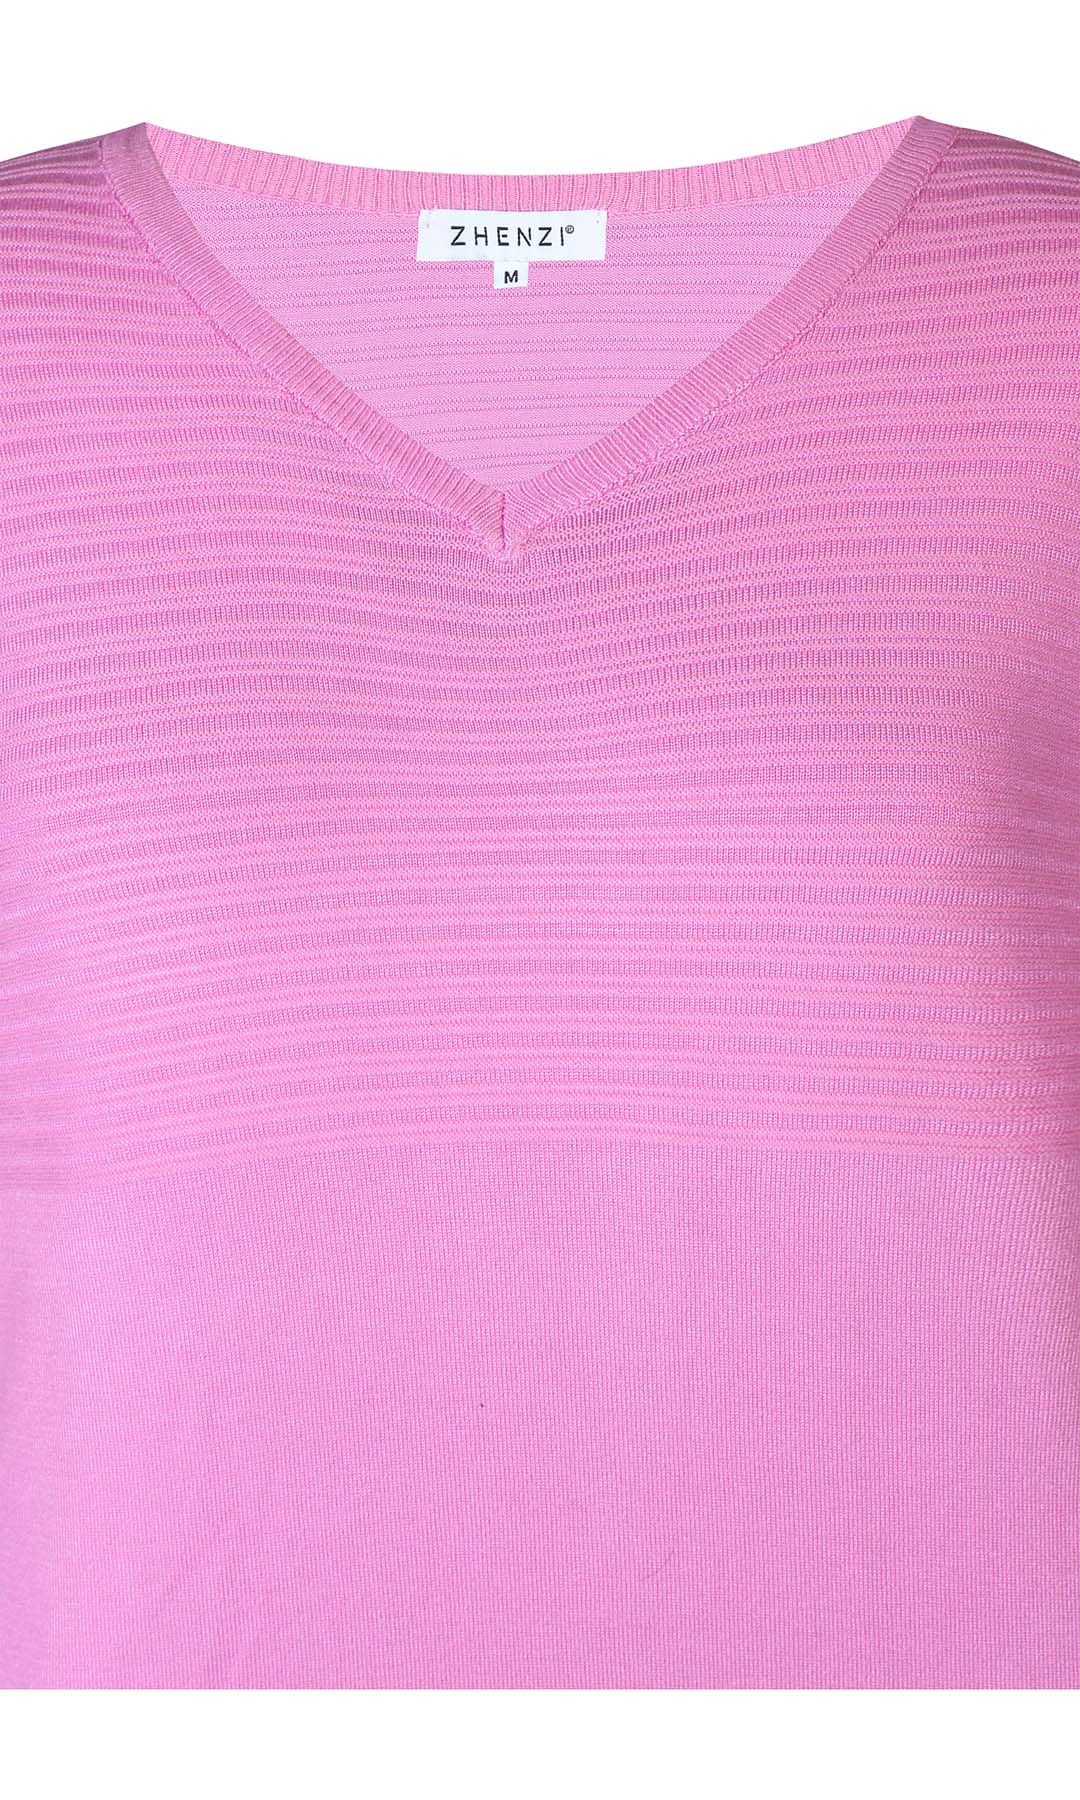 Kogle 085 - Pullover - Pink